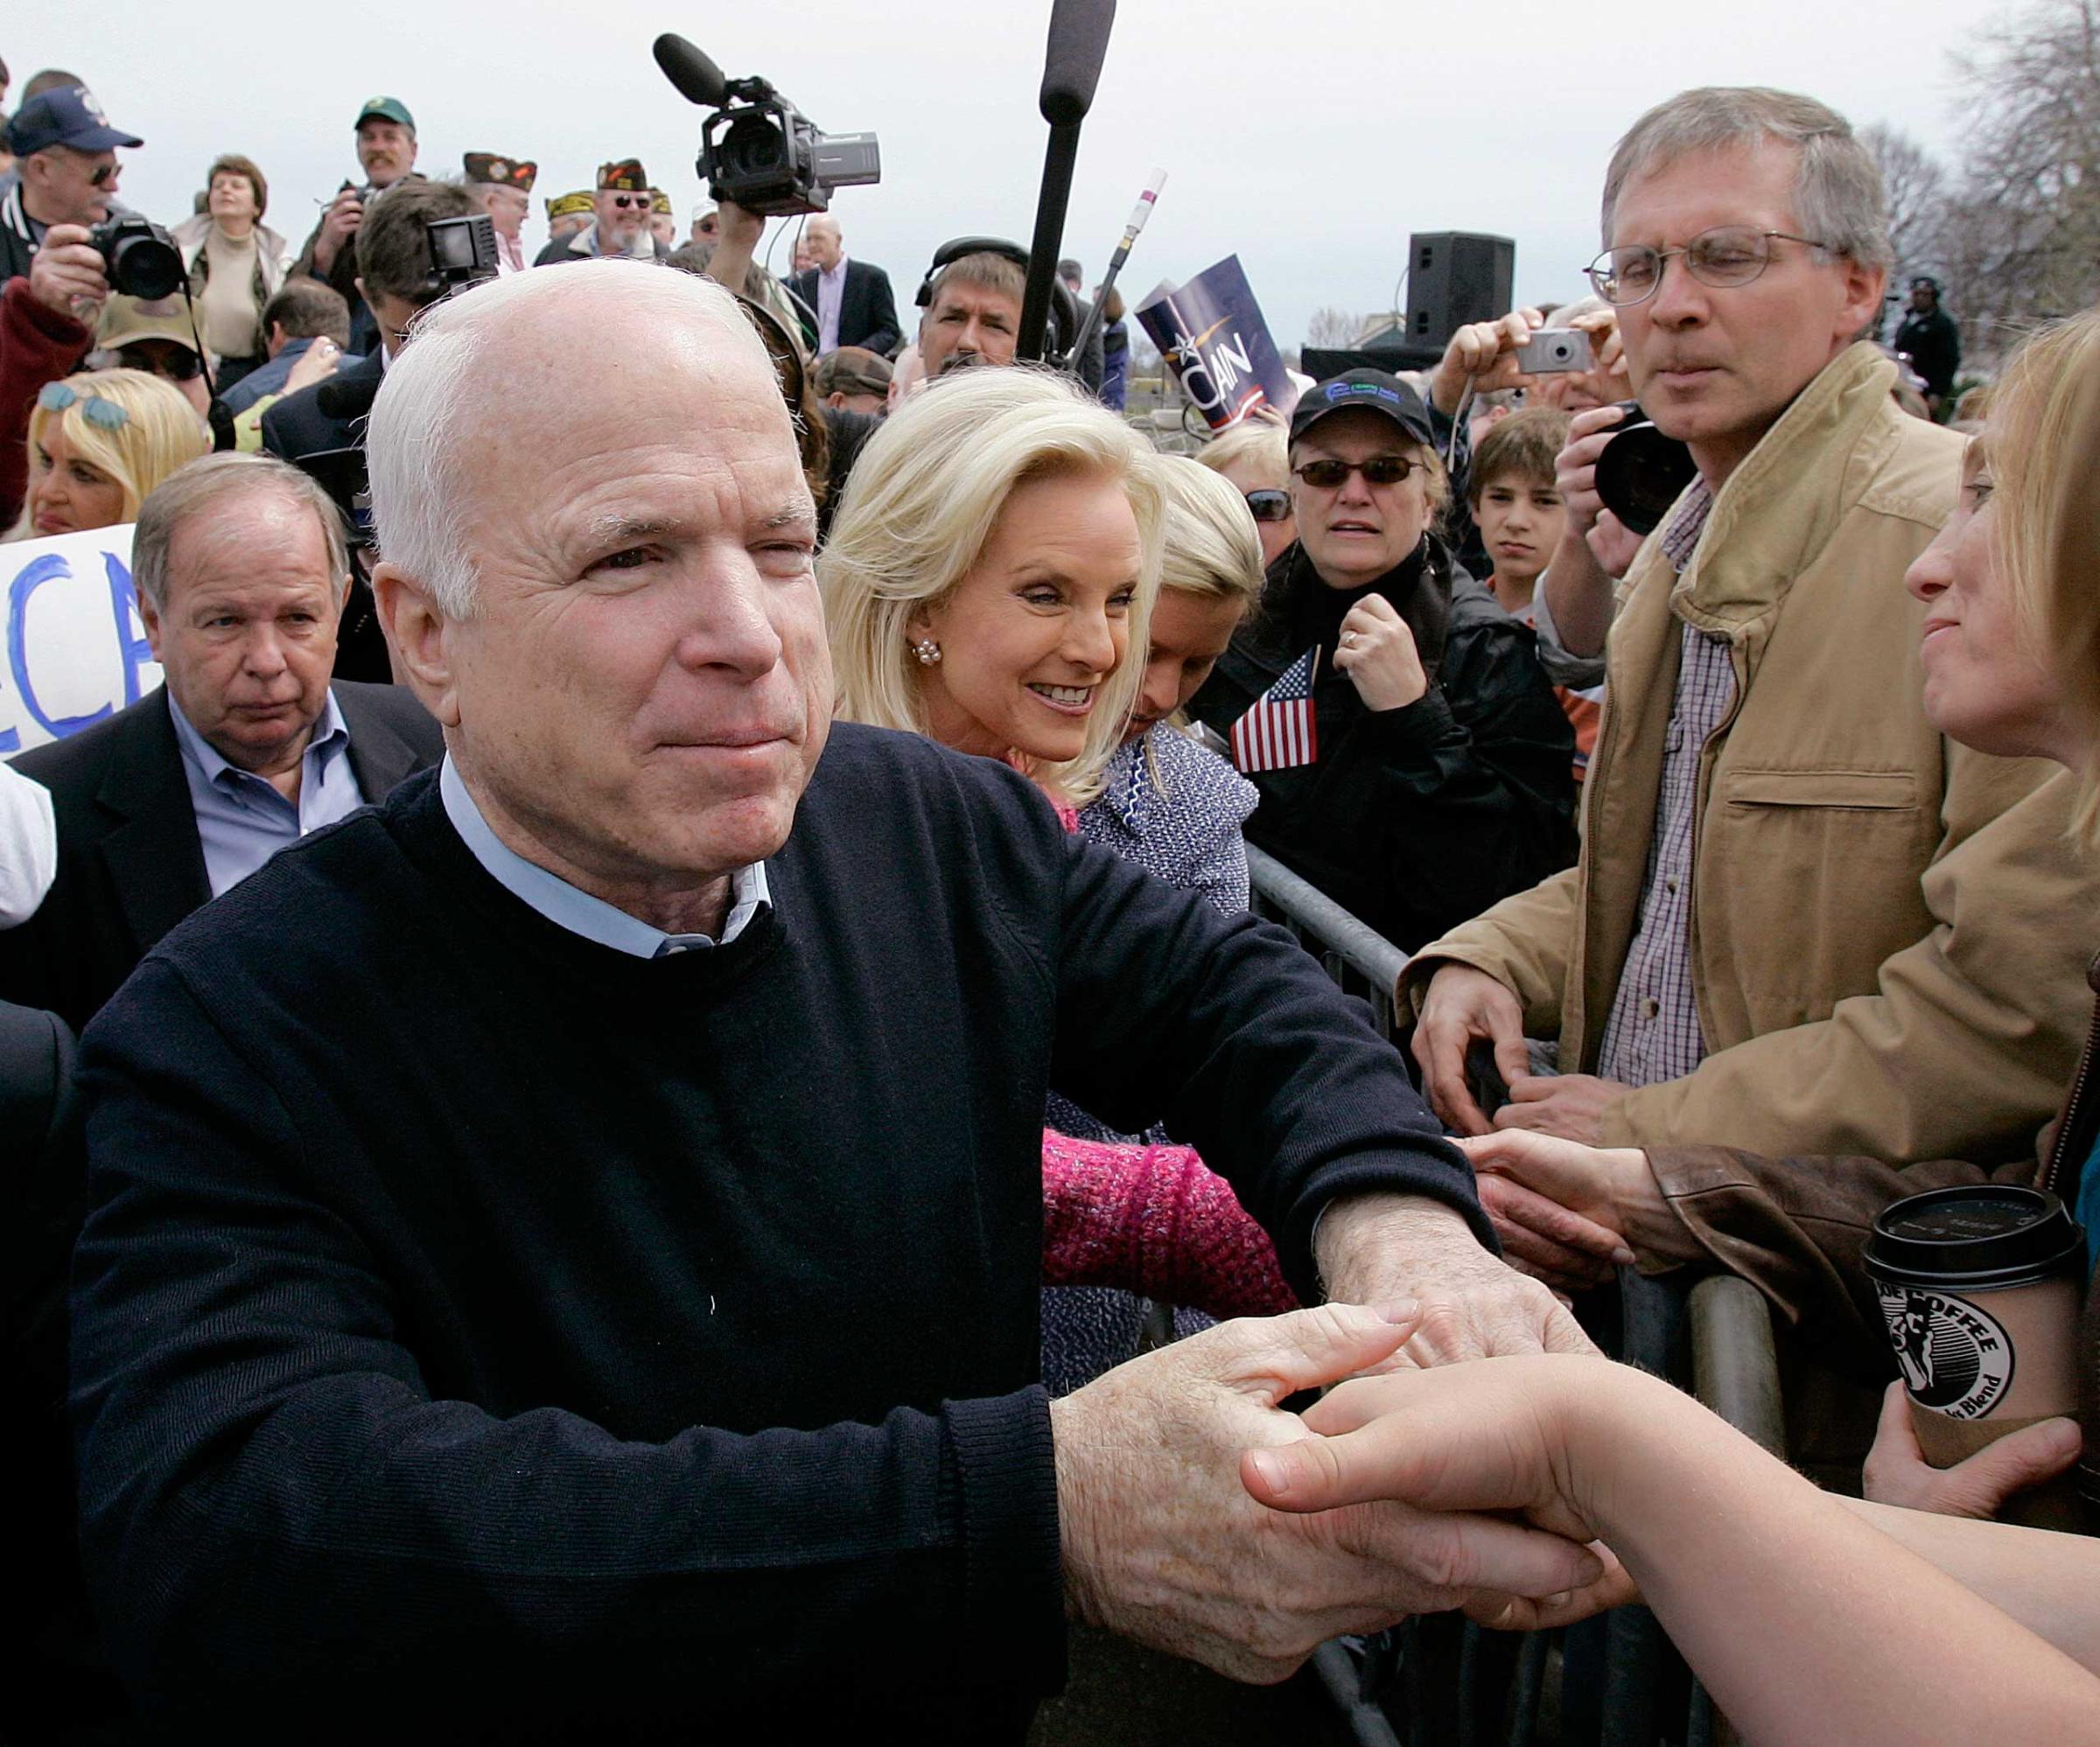 John McCain, Cindy McCain